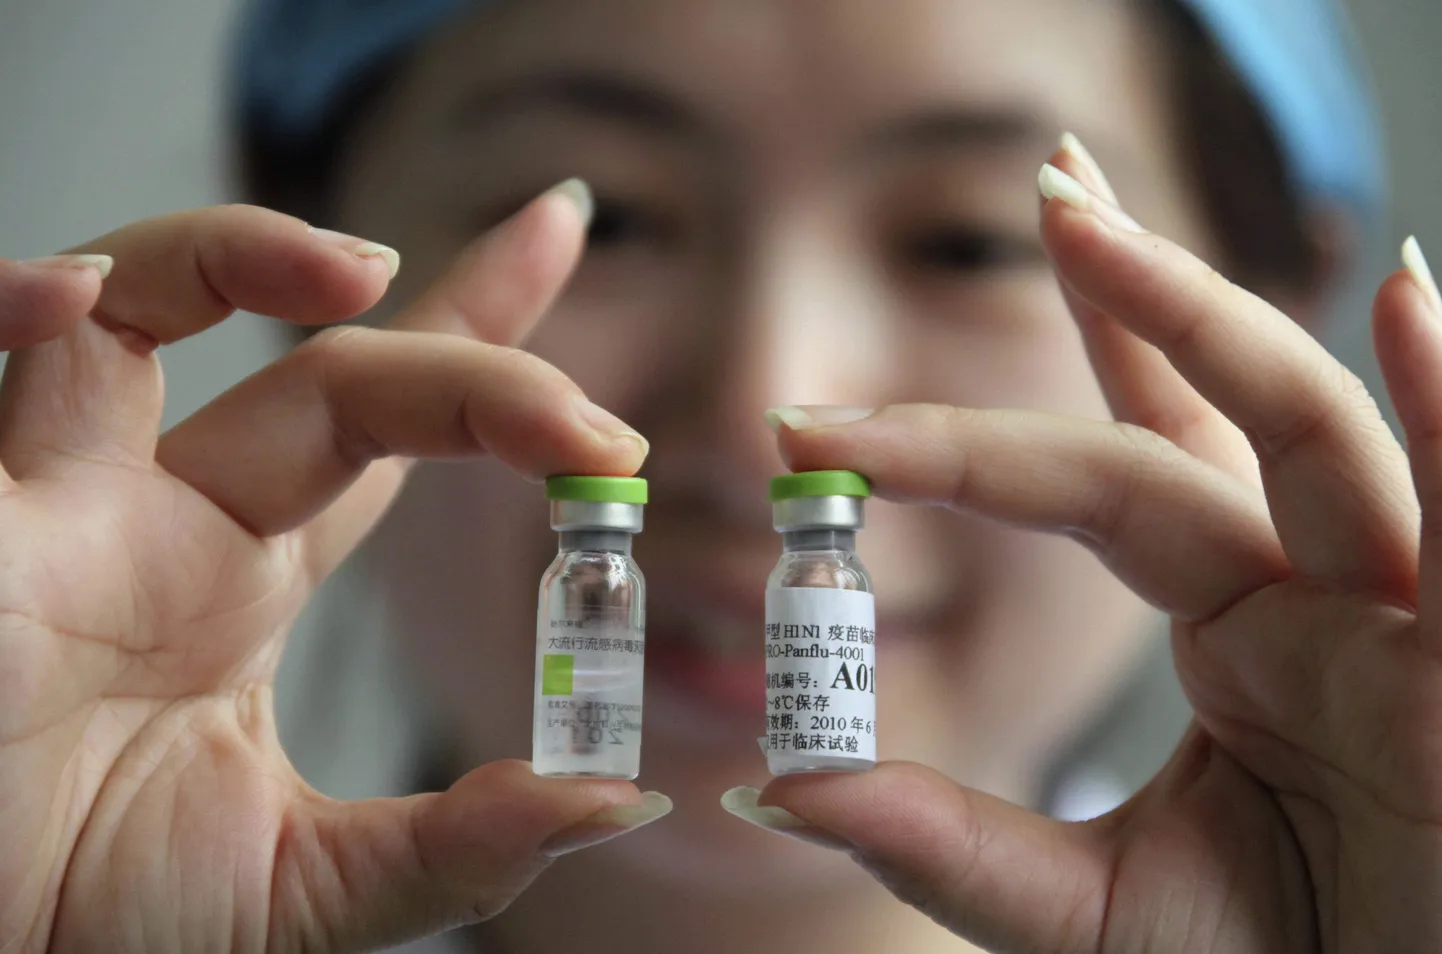 WHO sõnul võivad arengumaad jääda ilma uue gripi A/H1N1 ehk seagripi vaktsiinist.